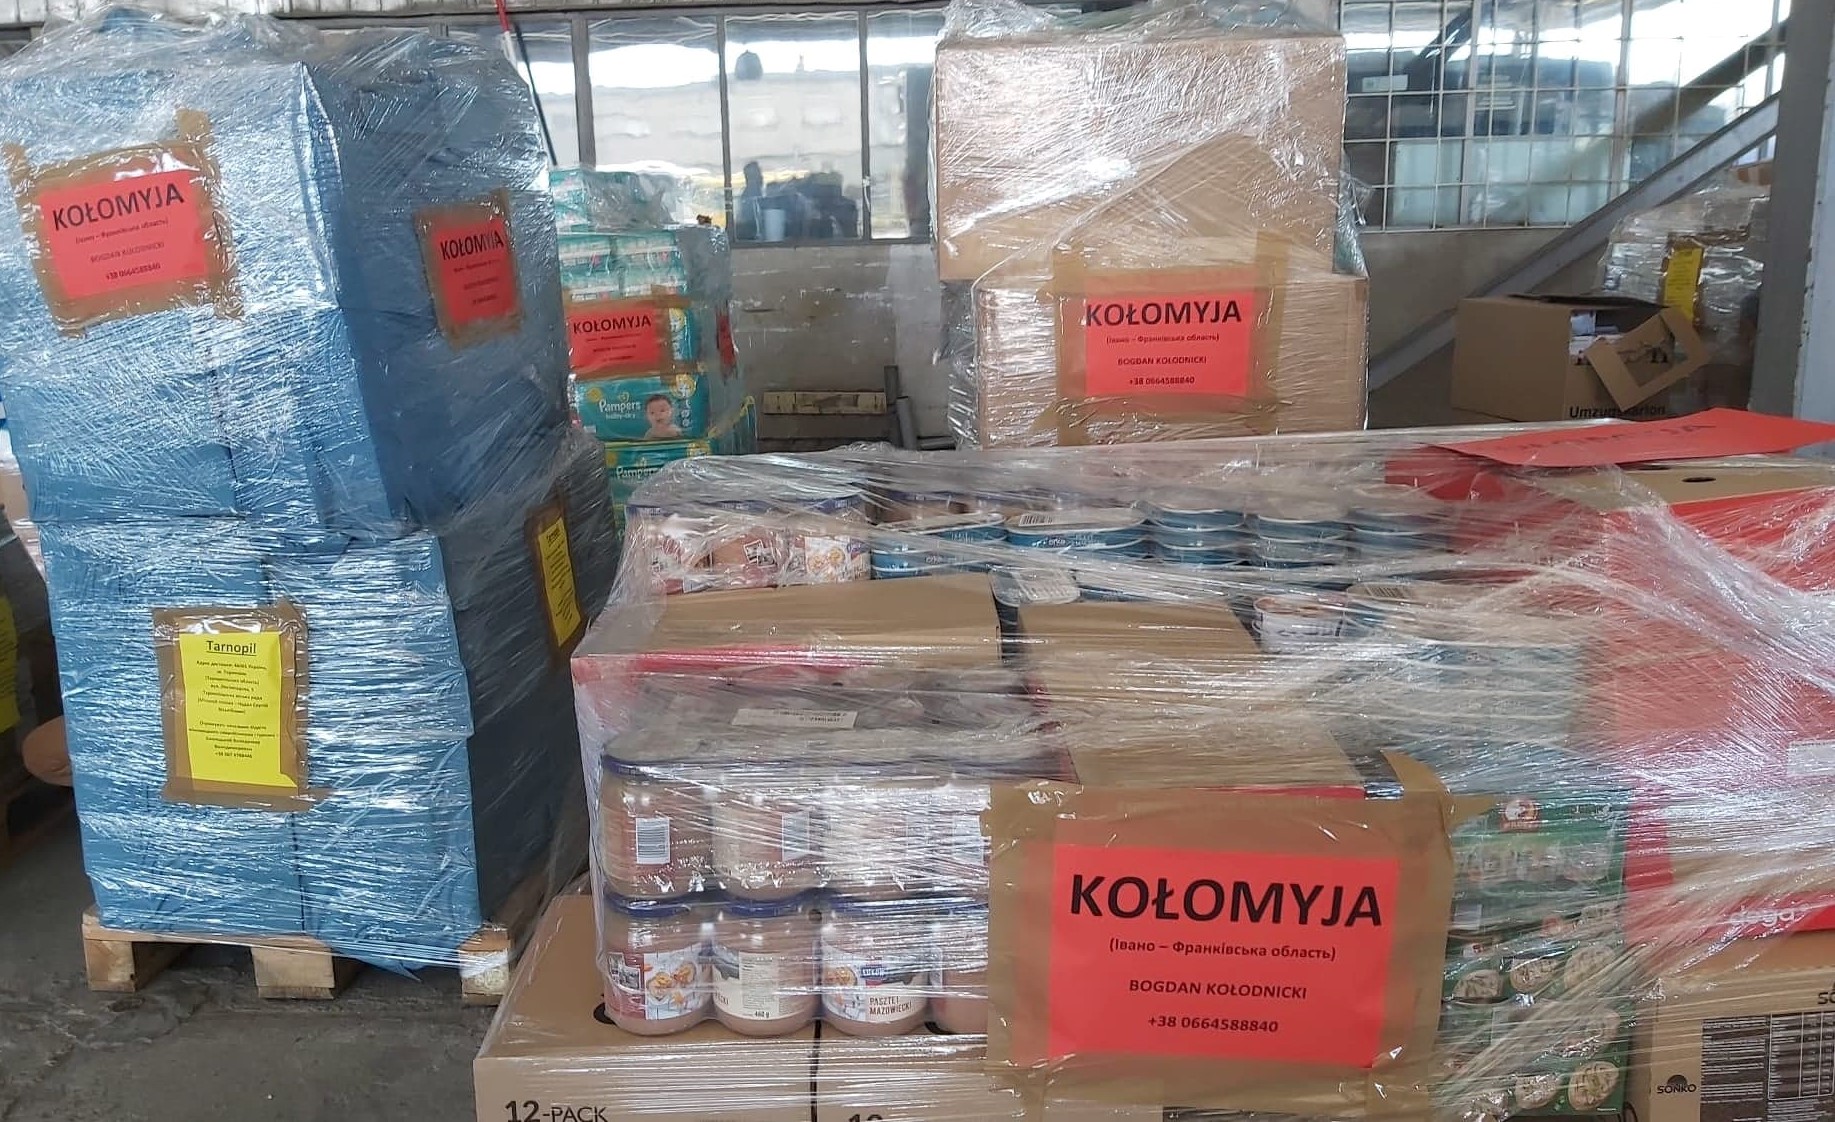 Transport humanitarny z miast partnerskich Nysy dotarł do Kołomyi